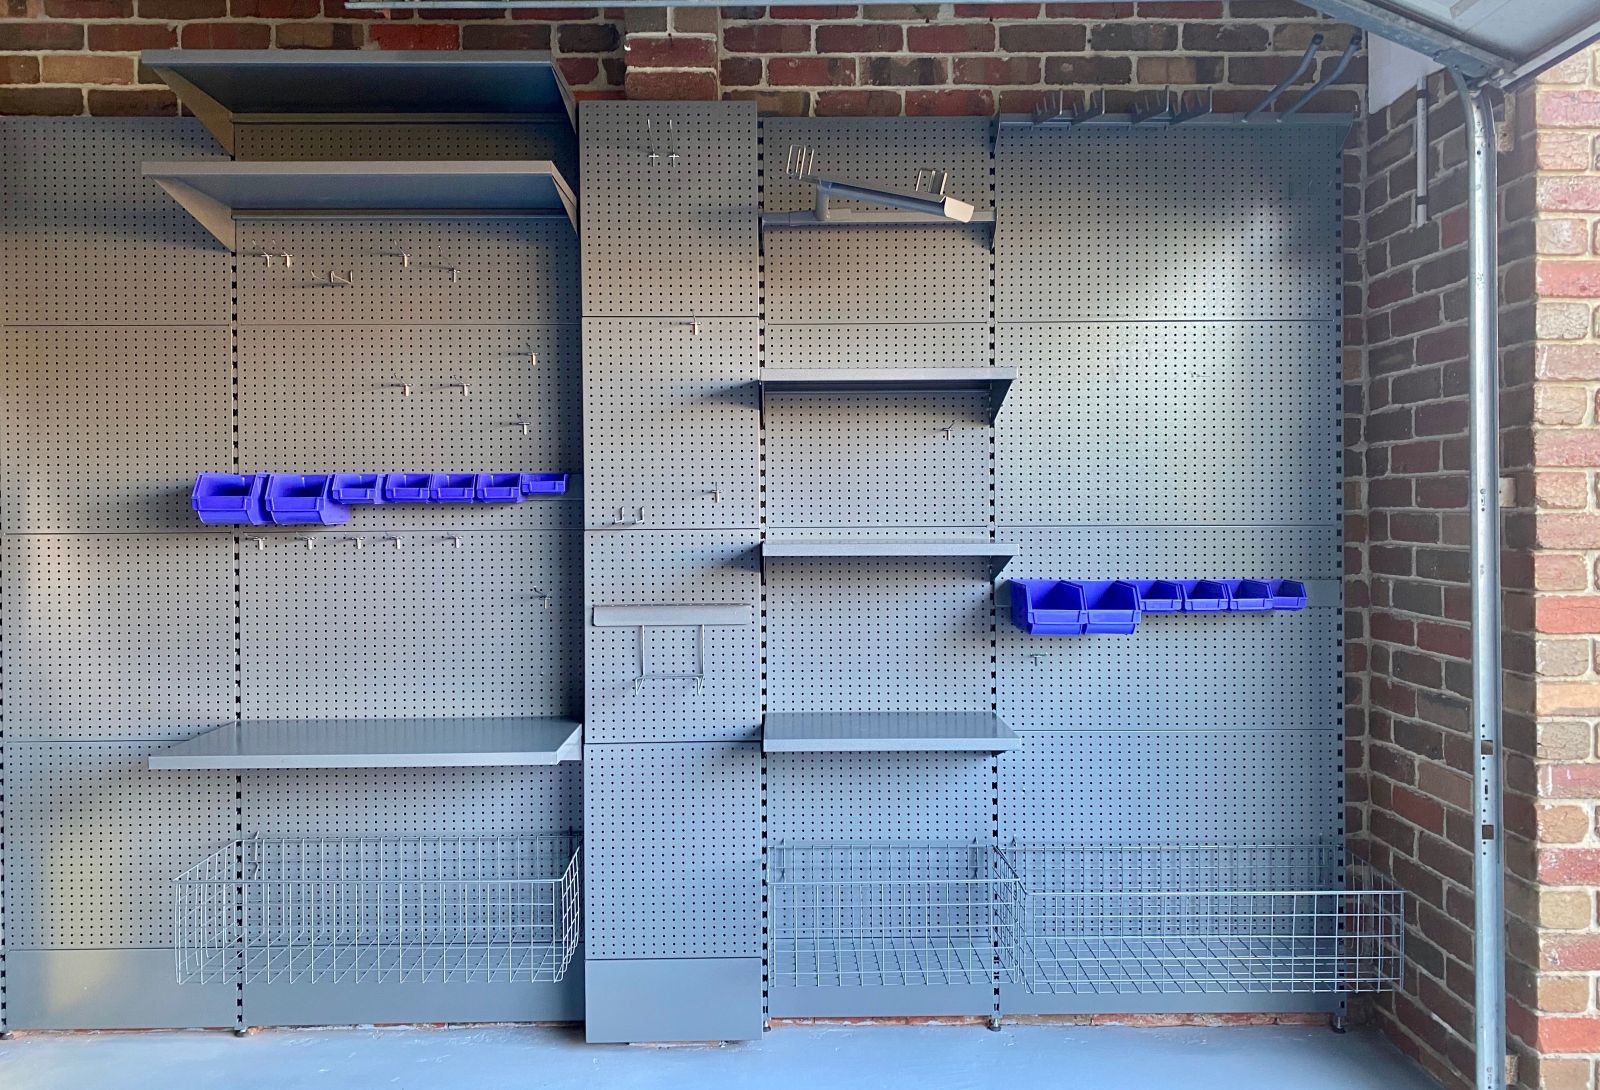 Garage storage system with garage storage shelves, wire storage baskets, hook and brackets